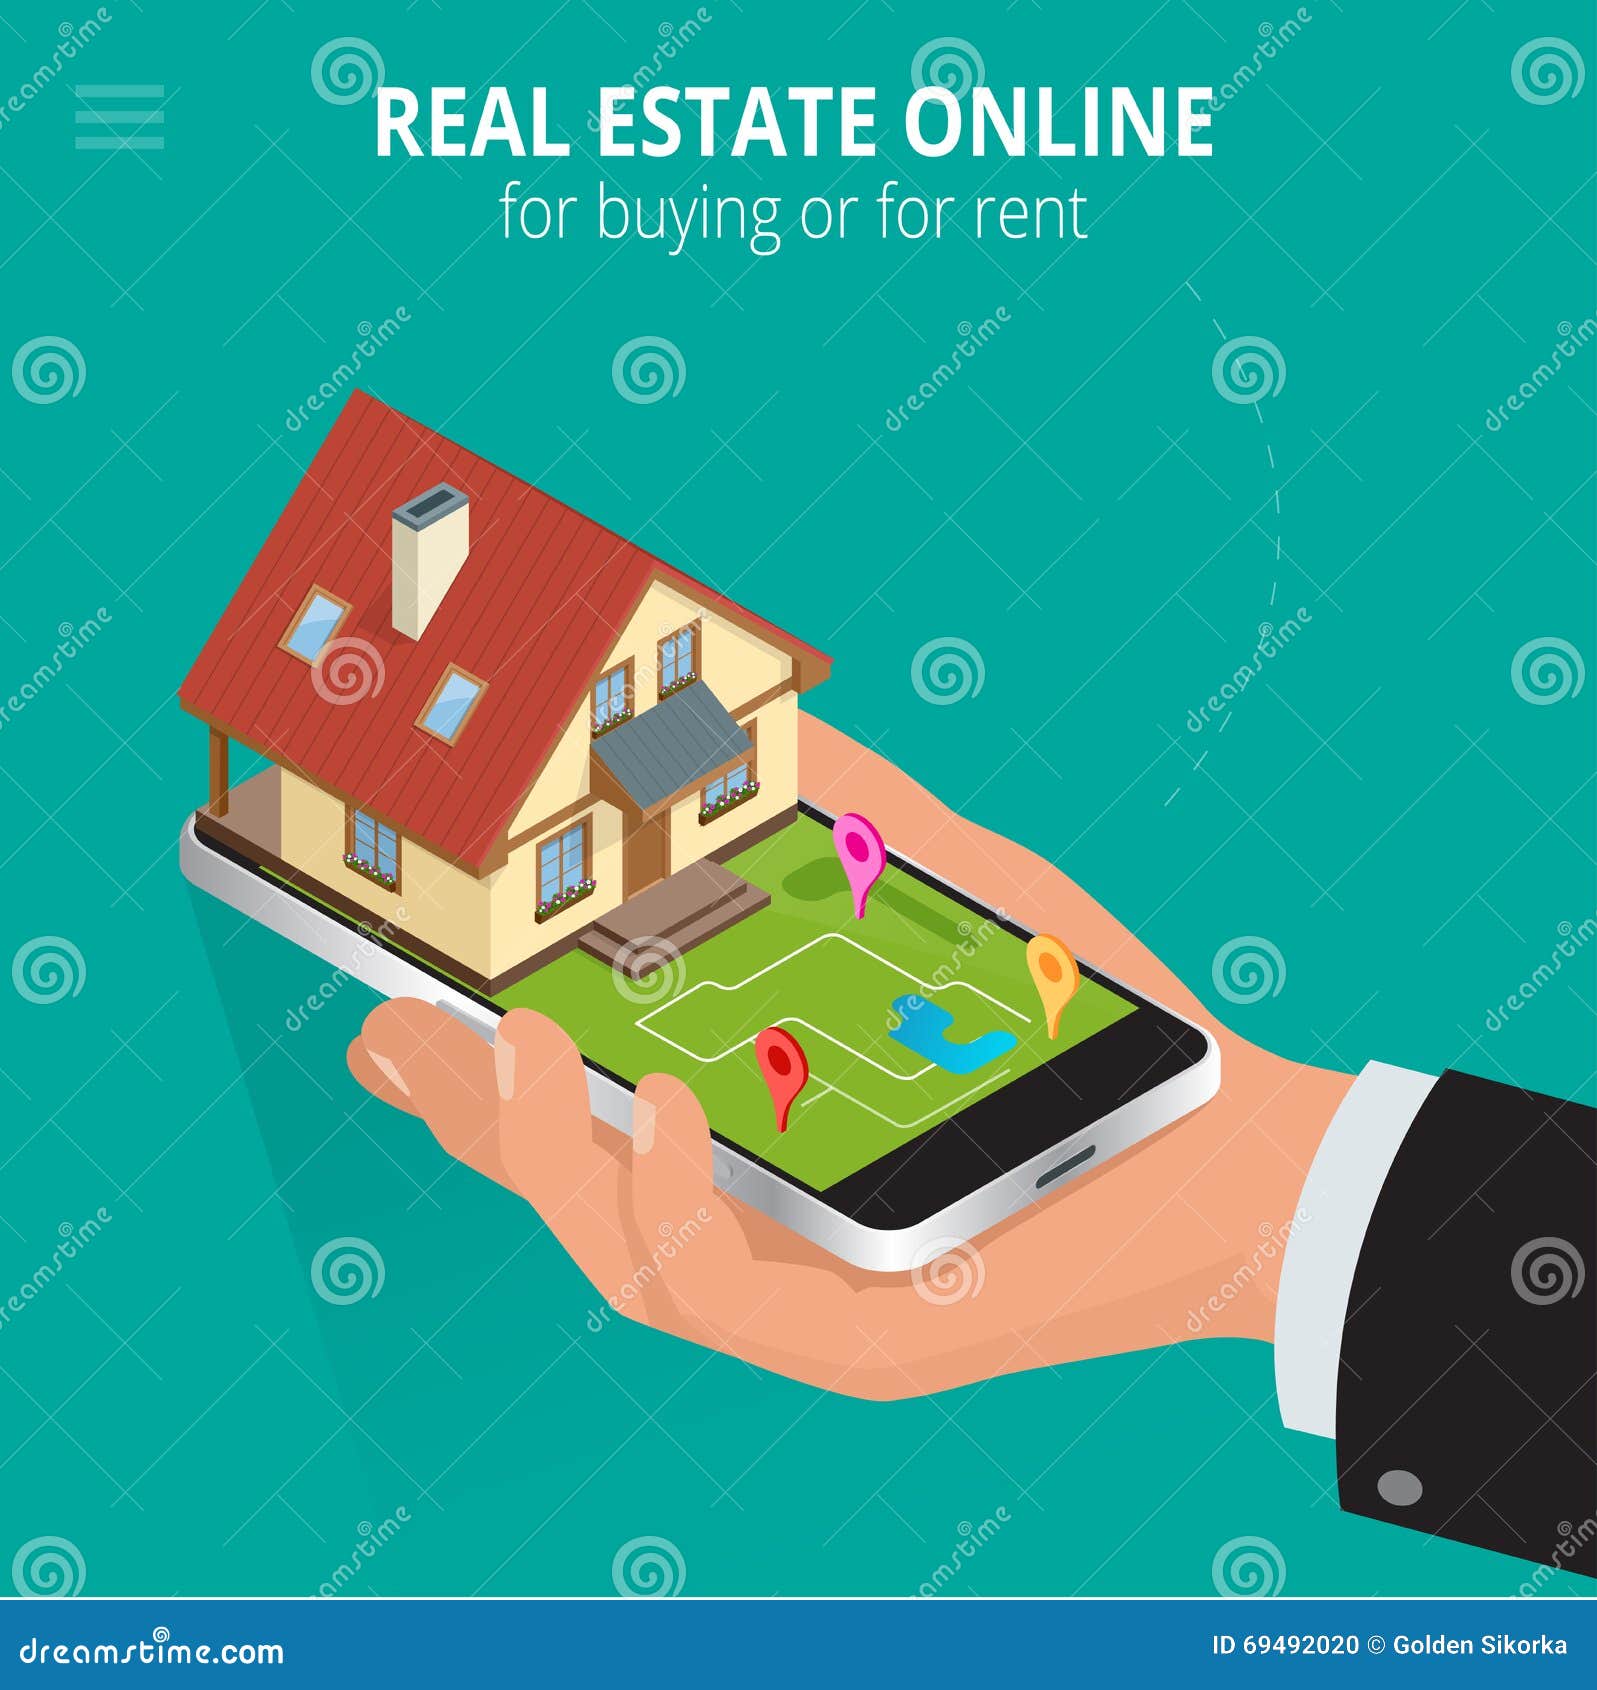 Real Estate Online